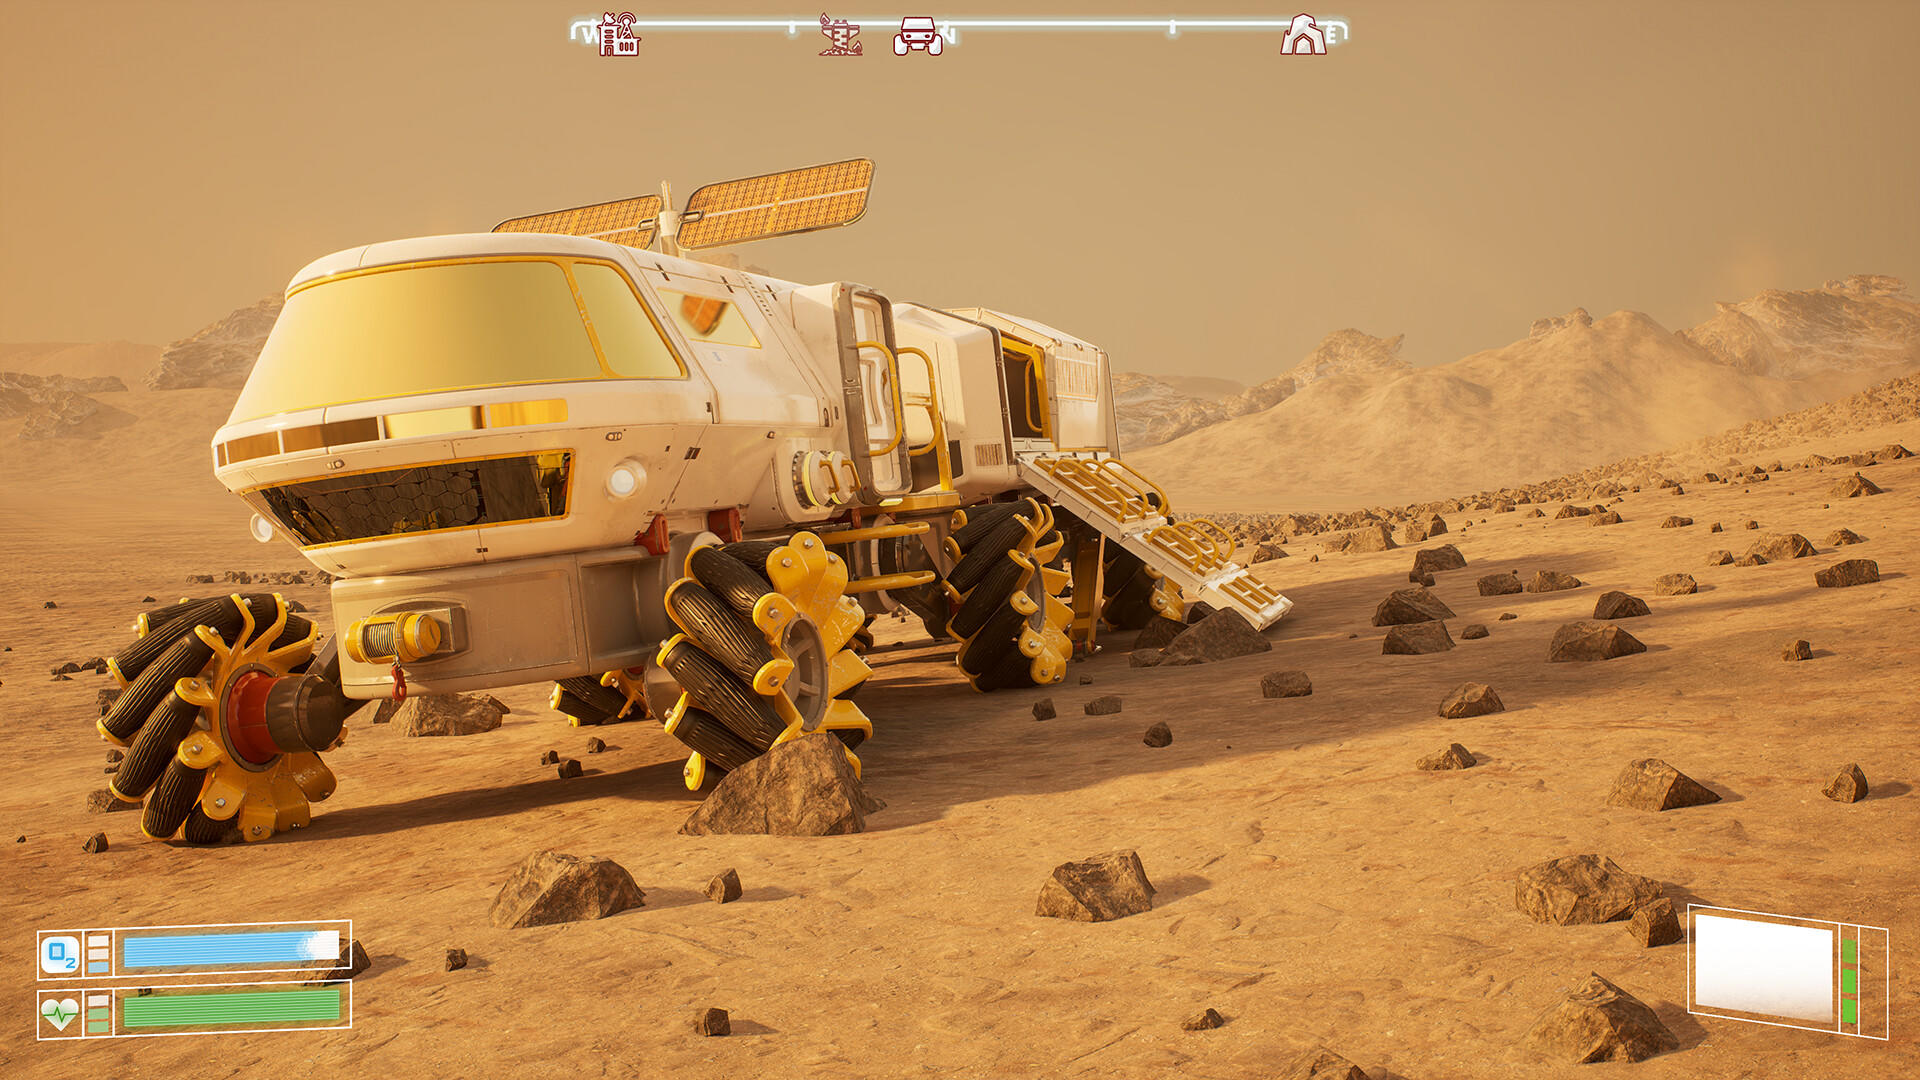 Screenshot 1 of การล่าอาณานิคมของดาวอังคาร โปรแกรมจำลองการเอาชีวิตรอด 